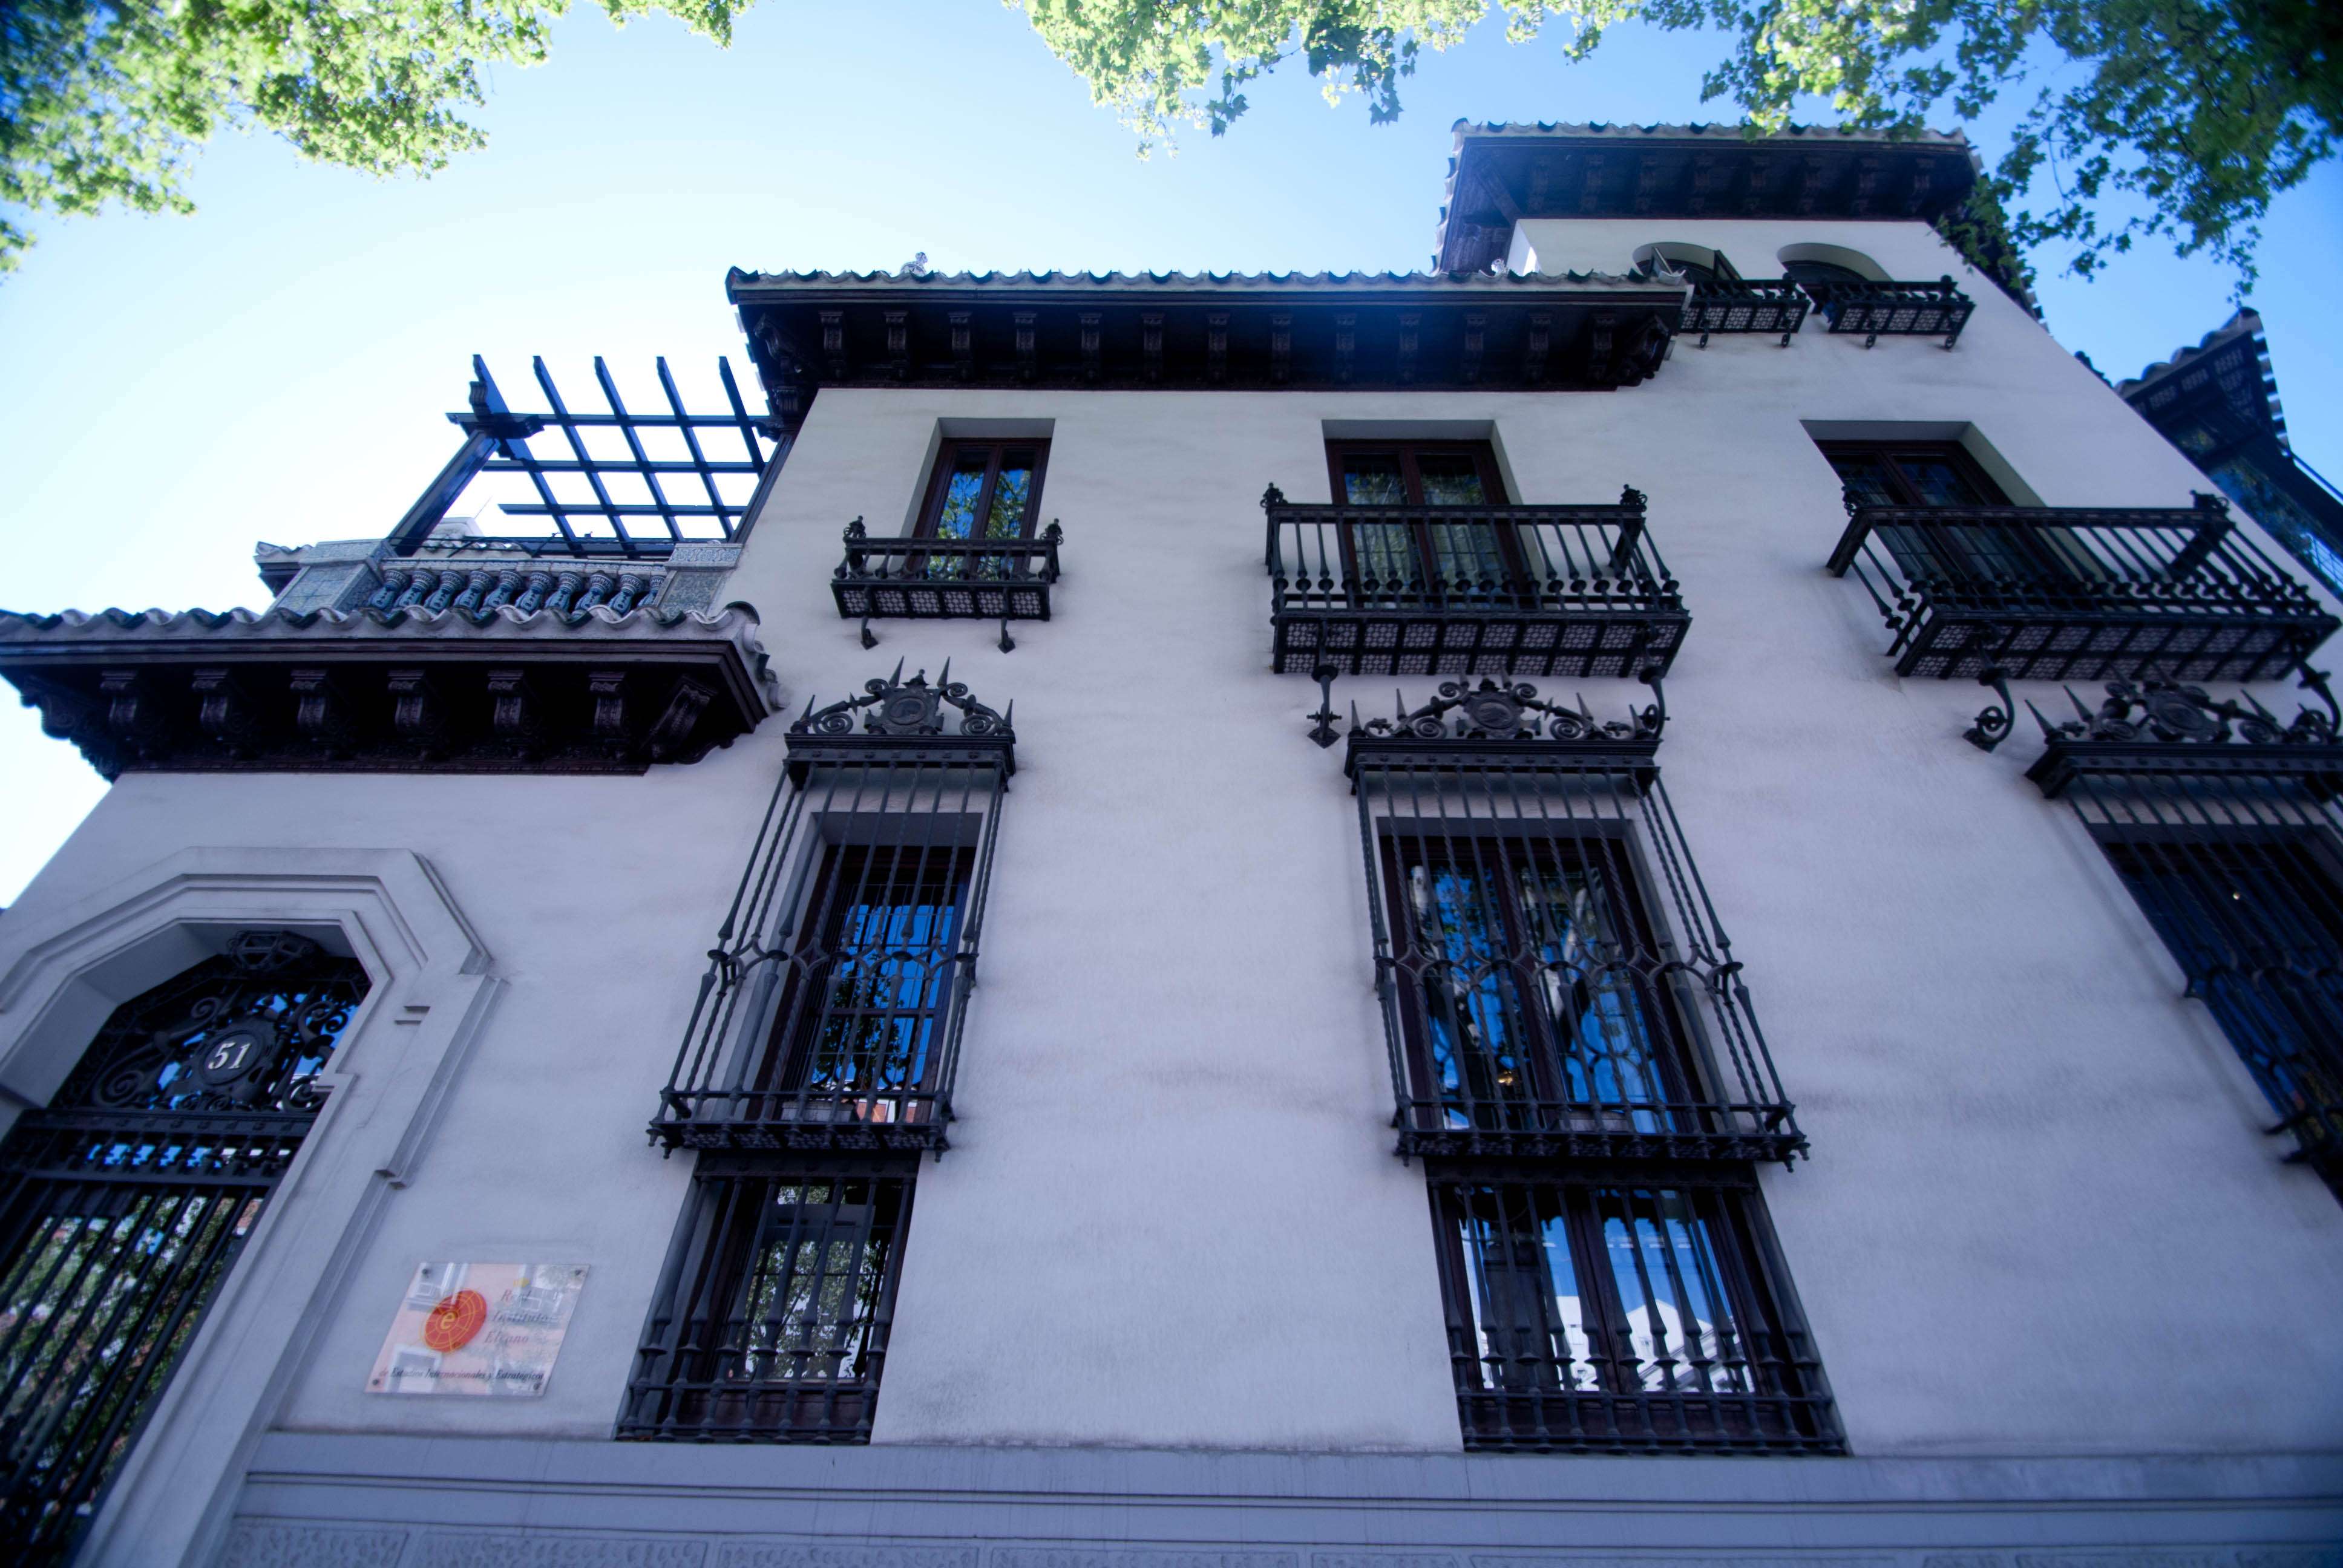 Paseos y Rutas por Madrid - Blogs of Spain - De Palacetes por el Barrio de Salamanca (14)